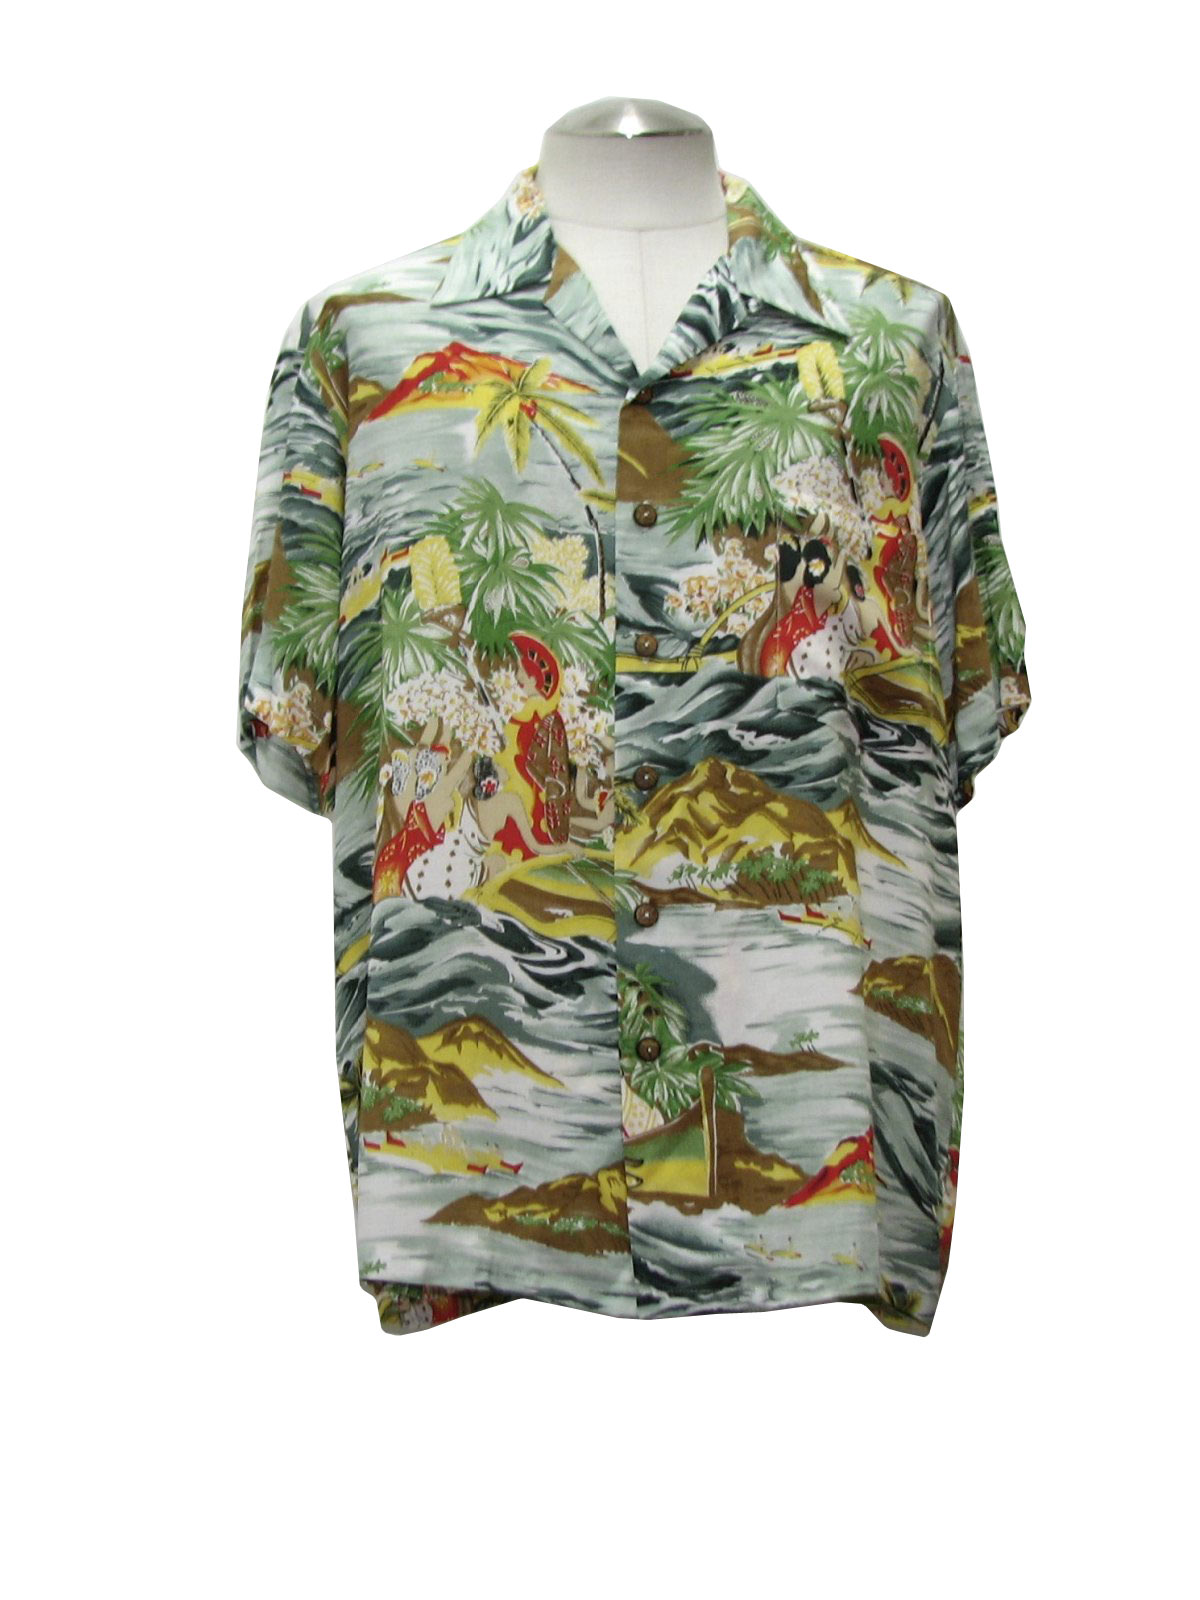 Retro 1980's Hawaiian Shirt (Kennington) : 80s style (made more ...